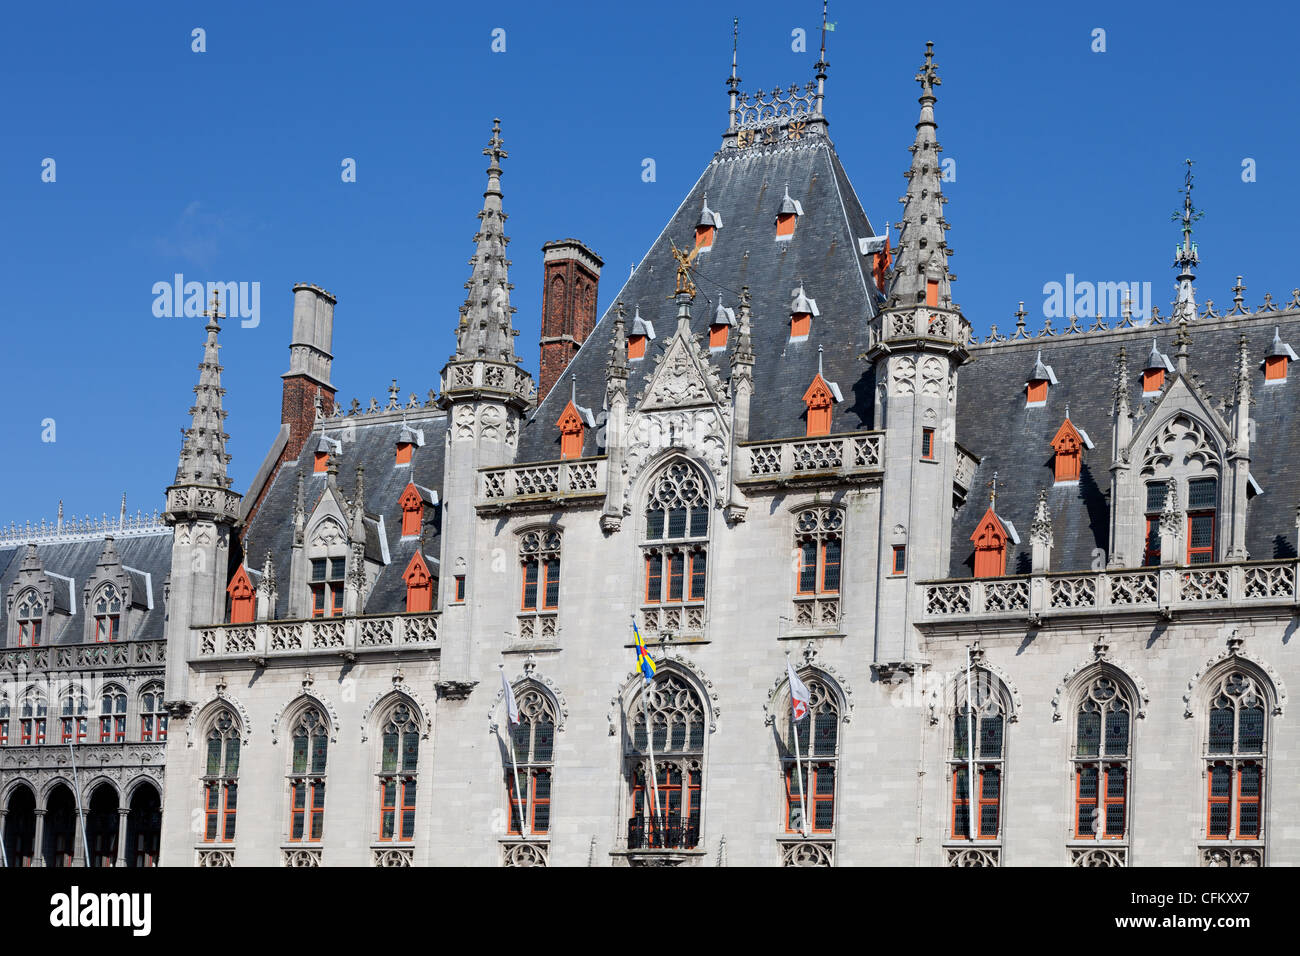 Stile neogotico edifici governativi nella piazza principale di Bruges, Belgio Foto Stock